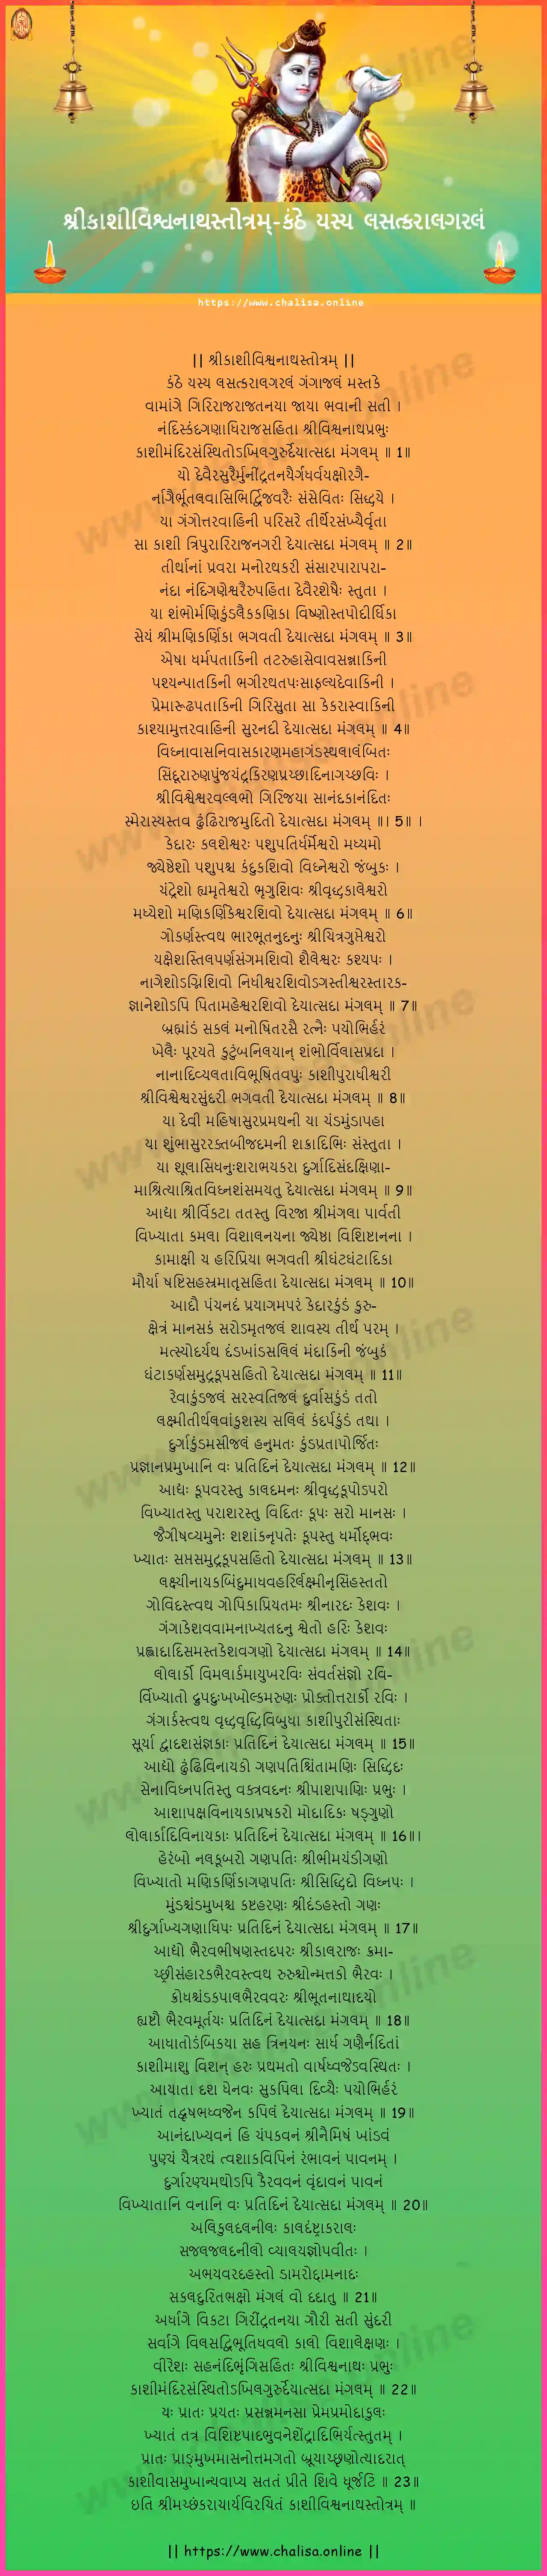 kanthe-yasya-lasatkaralagaralam-sri-kashi-visvanatha-stotram-gujarati-gujarati-lyrics-download